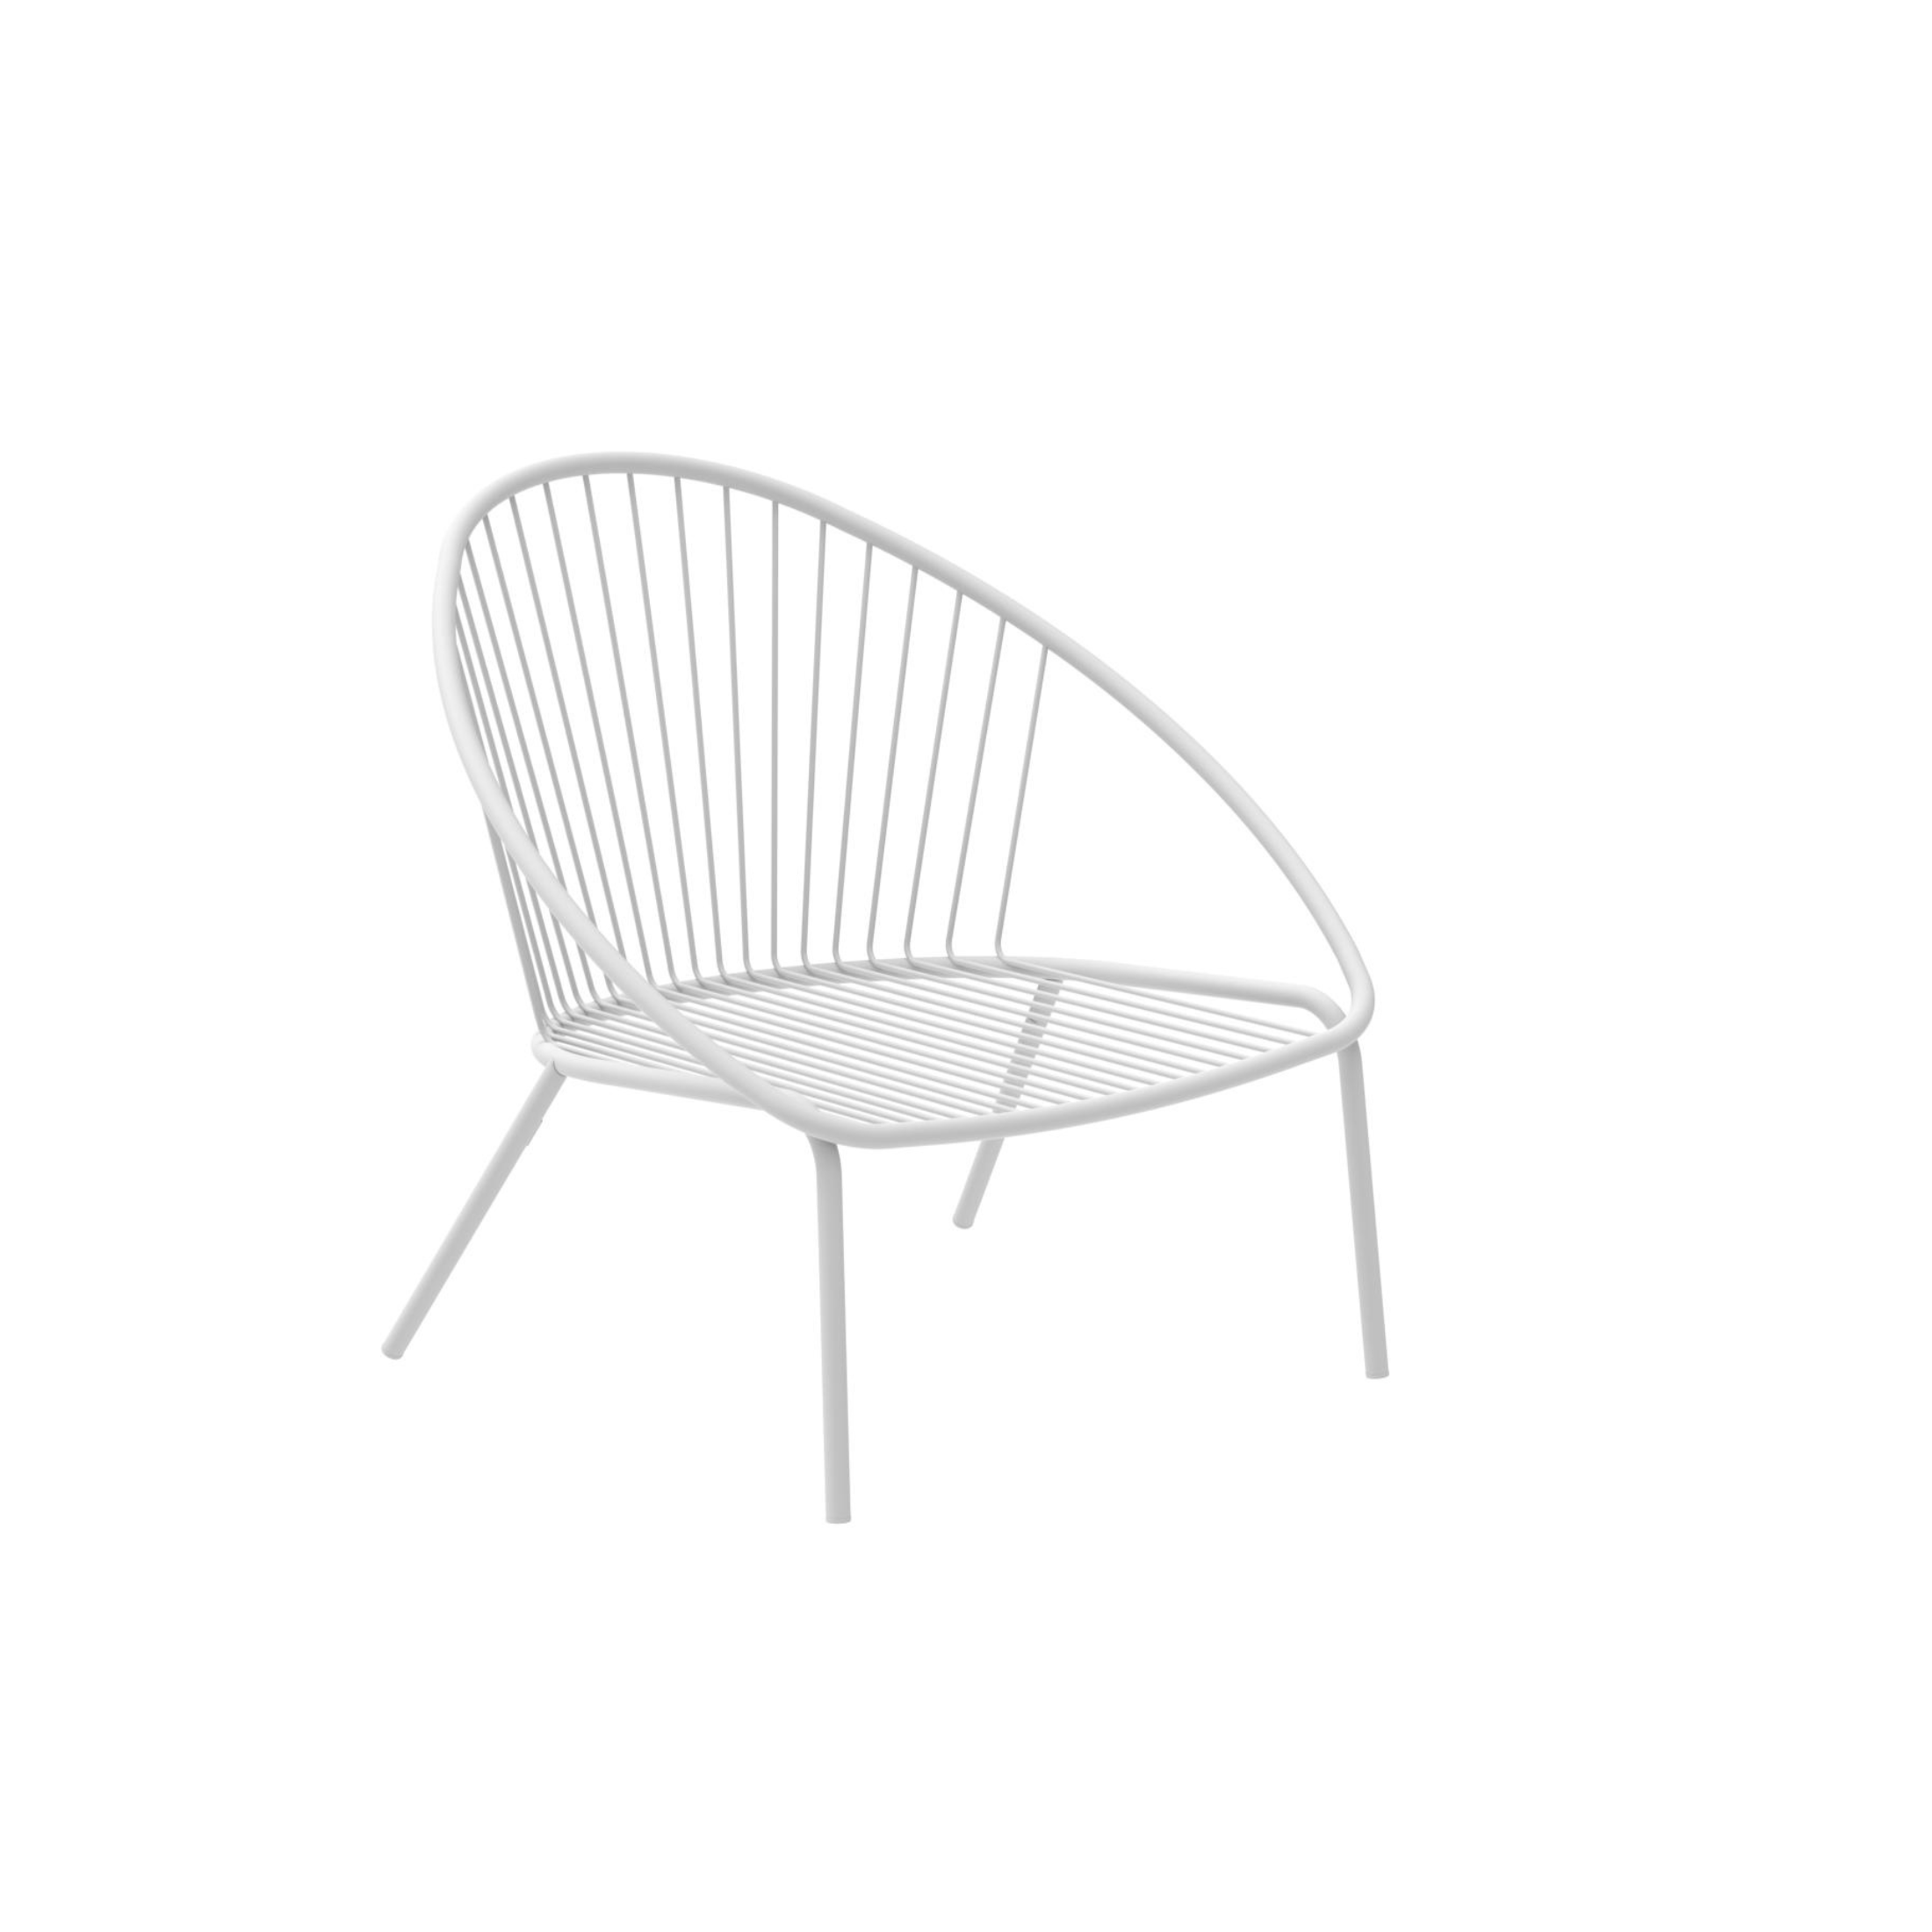 Sillón de jardín bajo de metal "Aria" sillón apilable 82x86 cm 87h